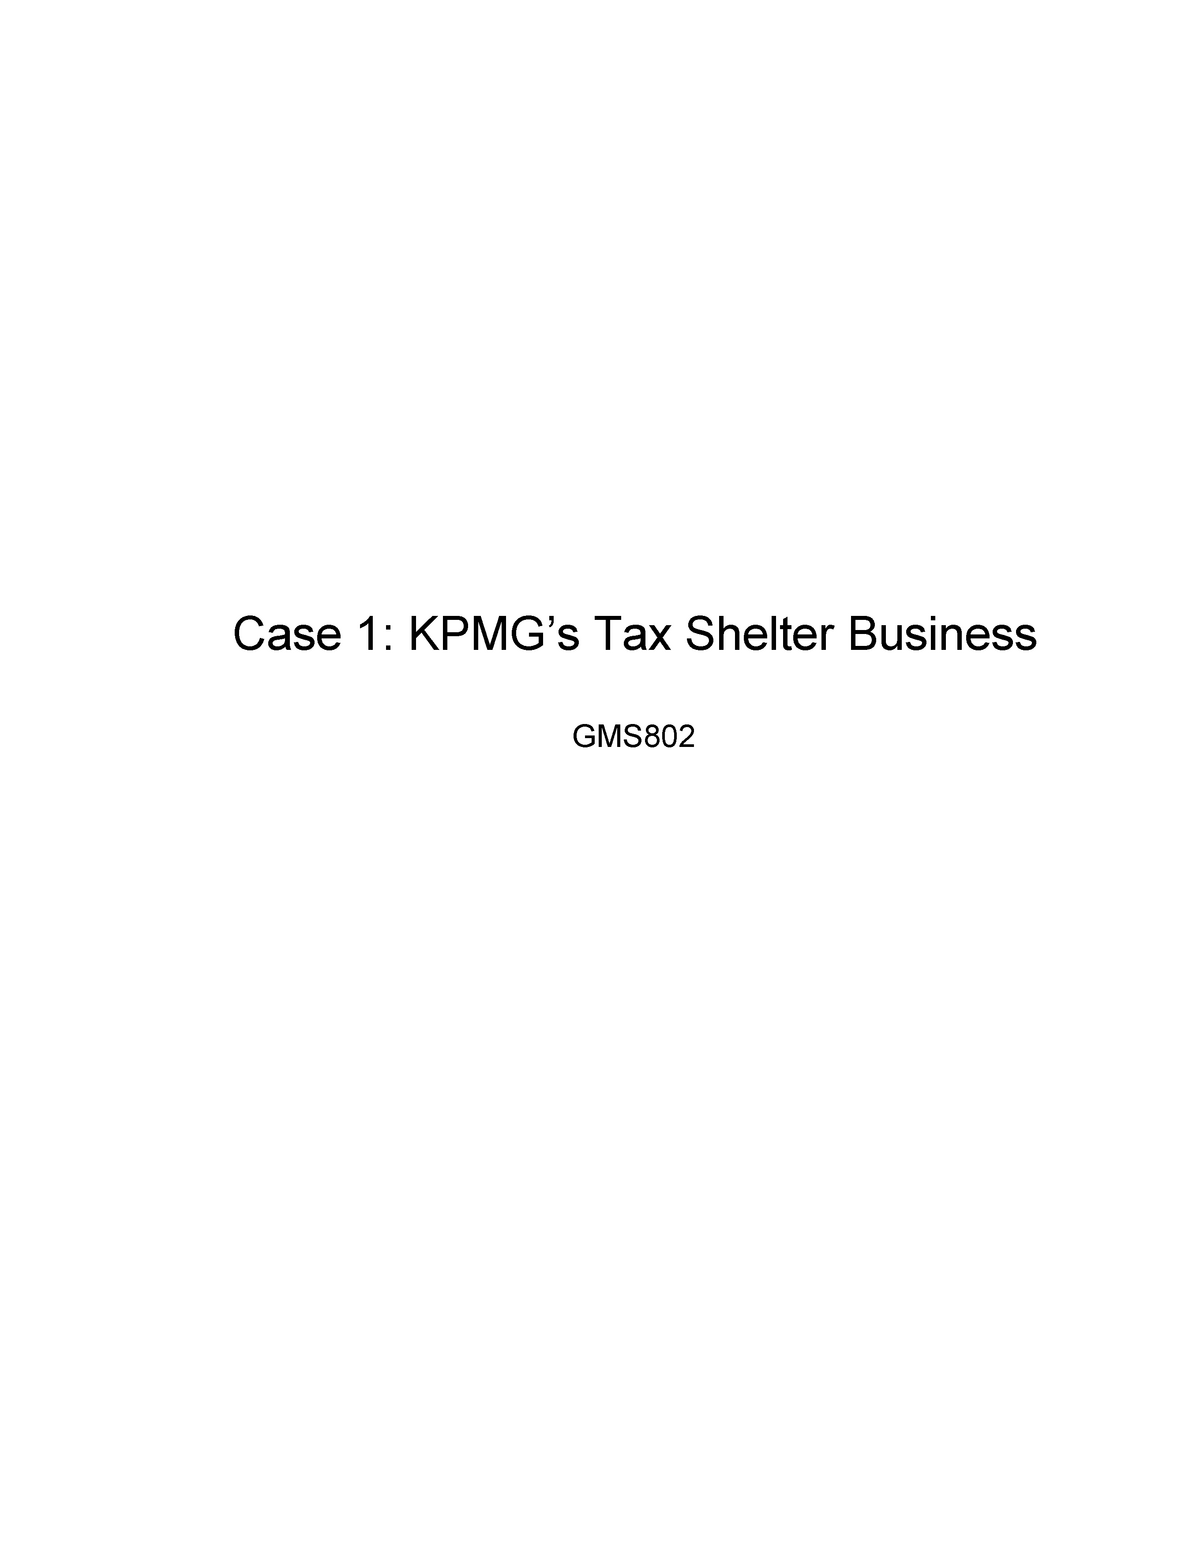 kpmg tax shelter case study